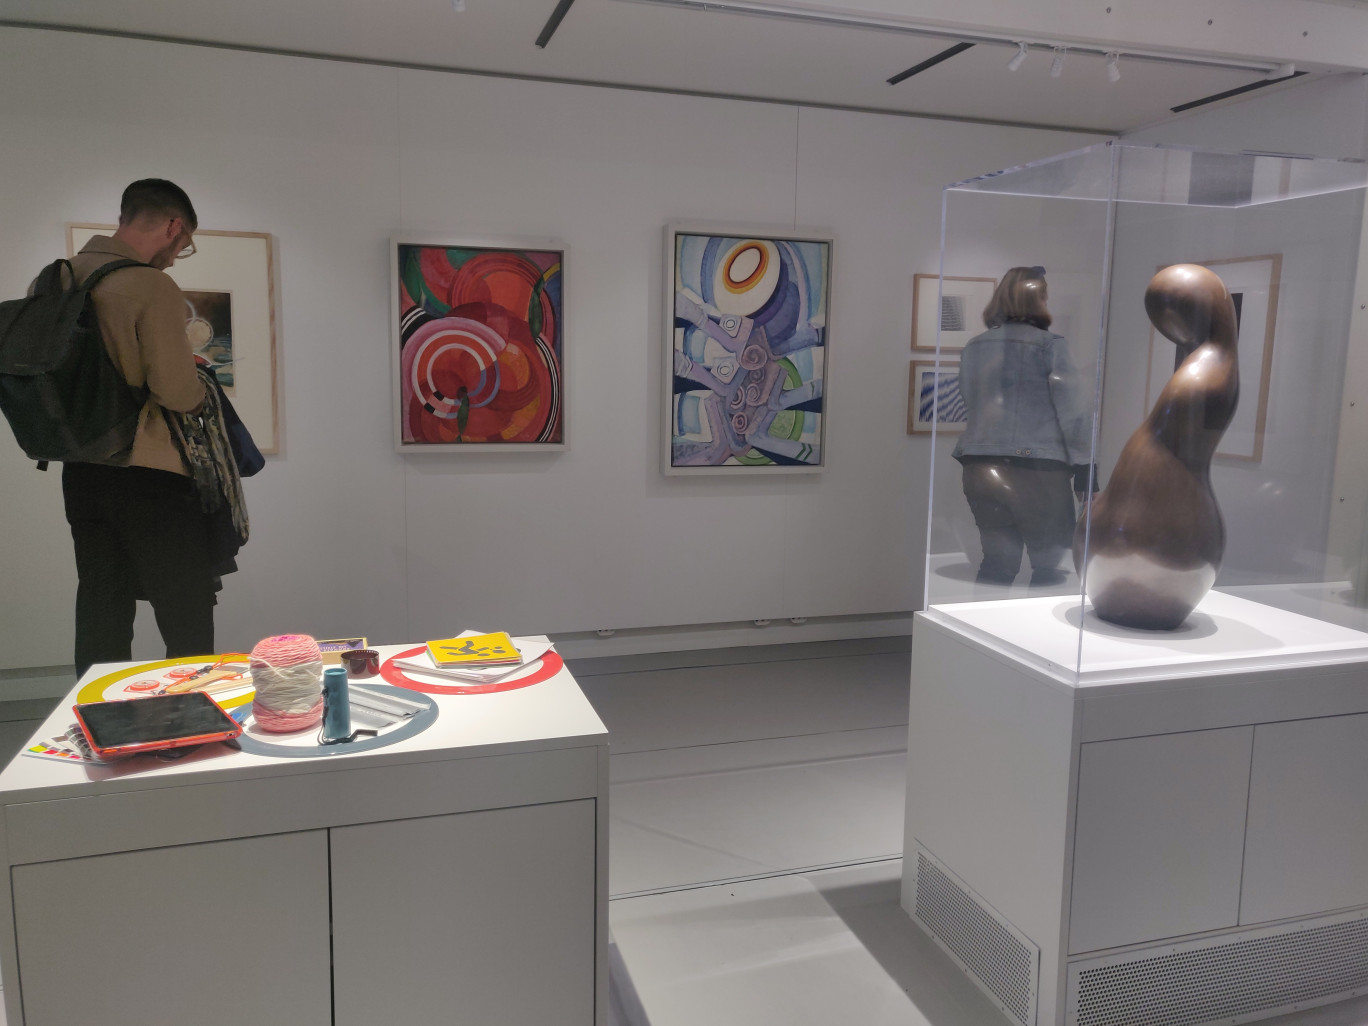 Le Musée Mobile s’est associé avec le Centre Georges Pompidou pour permettre à tous de découvrir l’art contemporain (c) Aletheia Press / D. La Phung